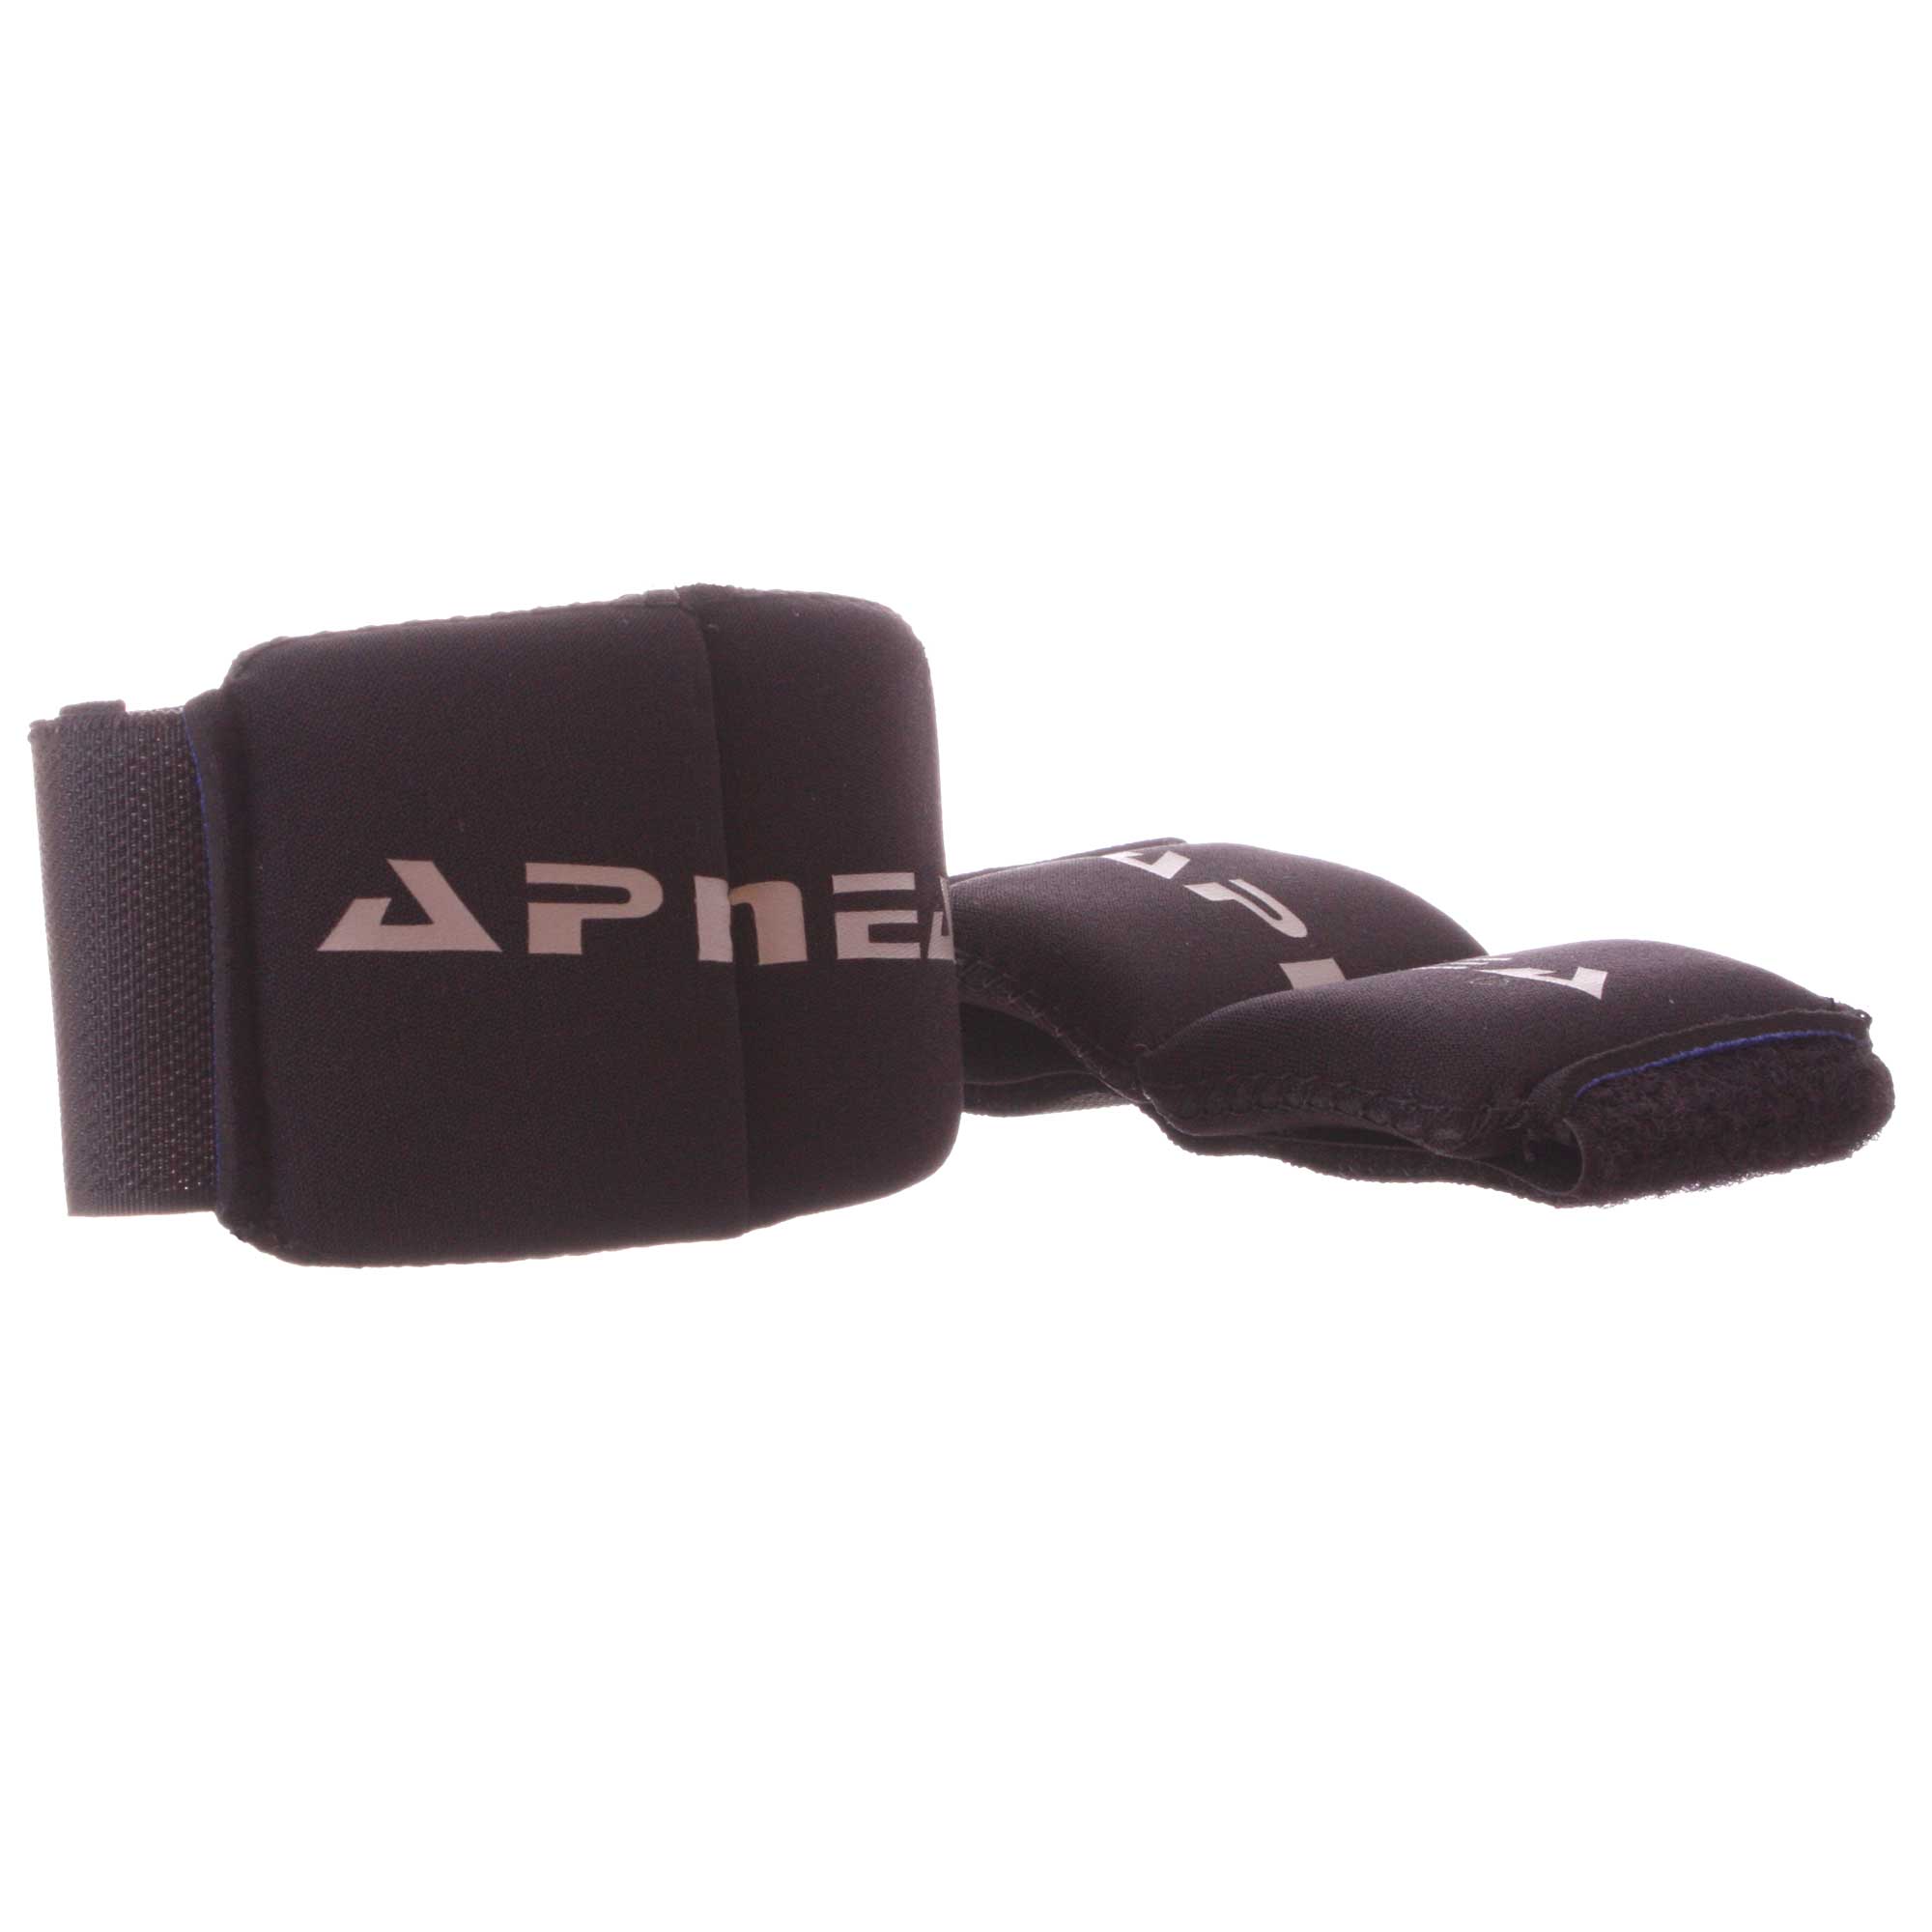 Apnea 500g Ankle Weights Black (pair)